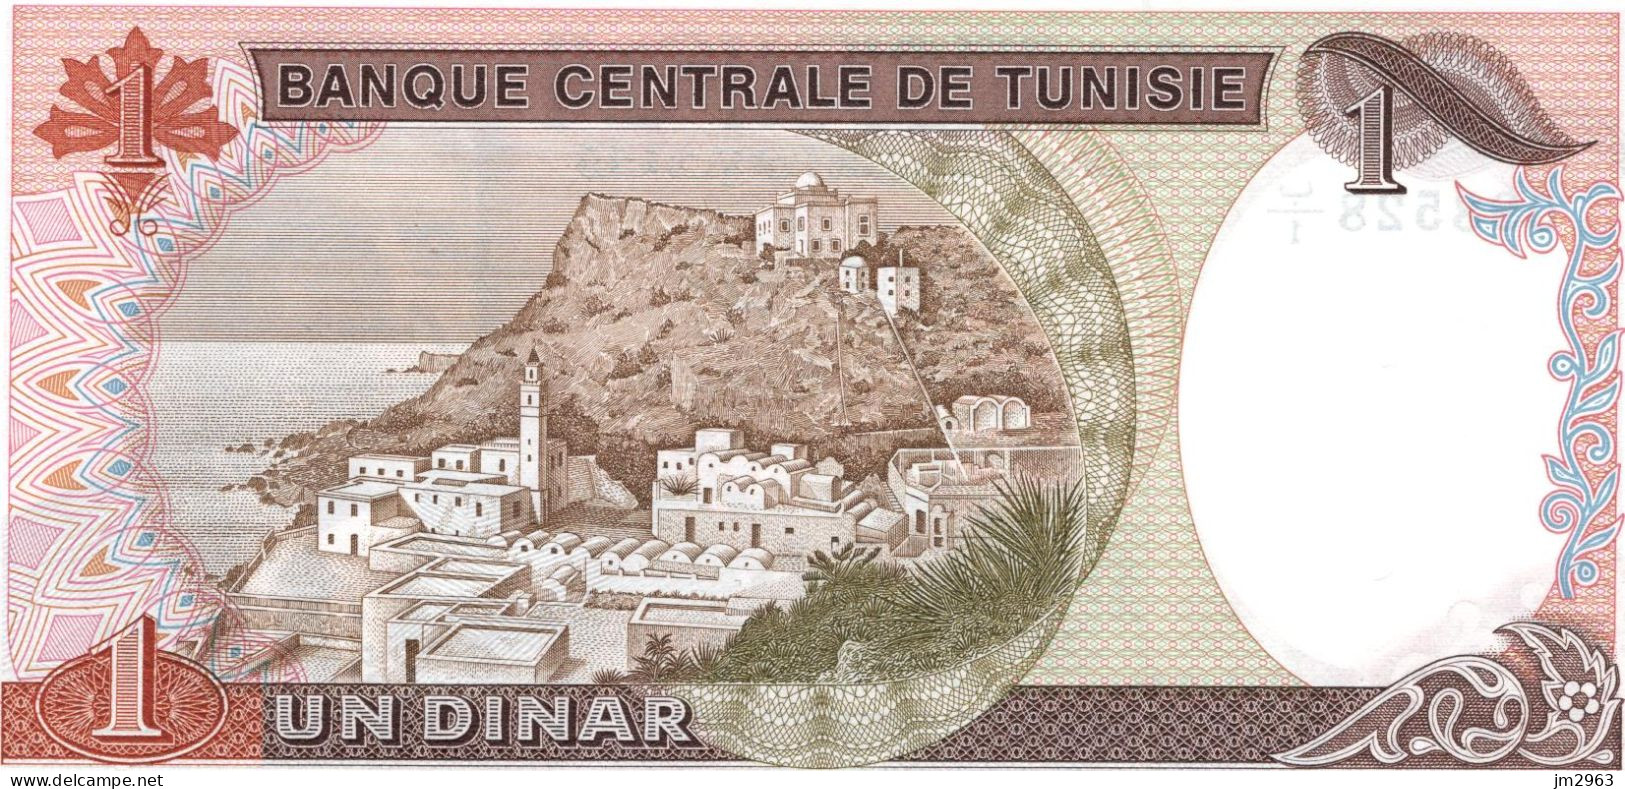 TUNISIE 1 DINAR 15.10.1980 UNC  B1/098528 - Tunesien